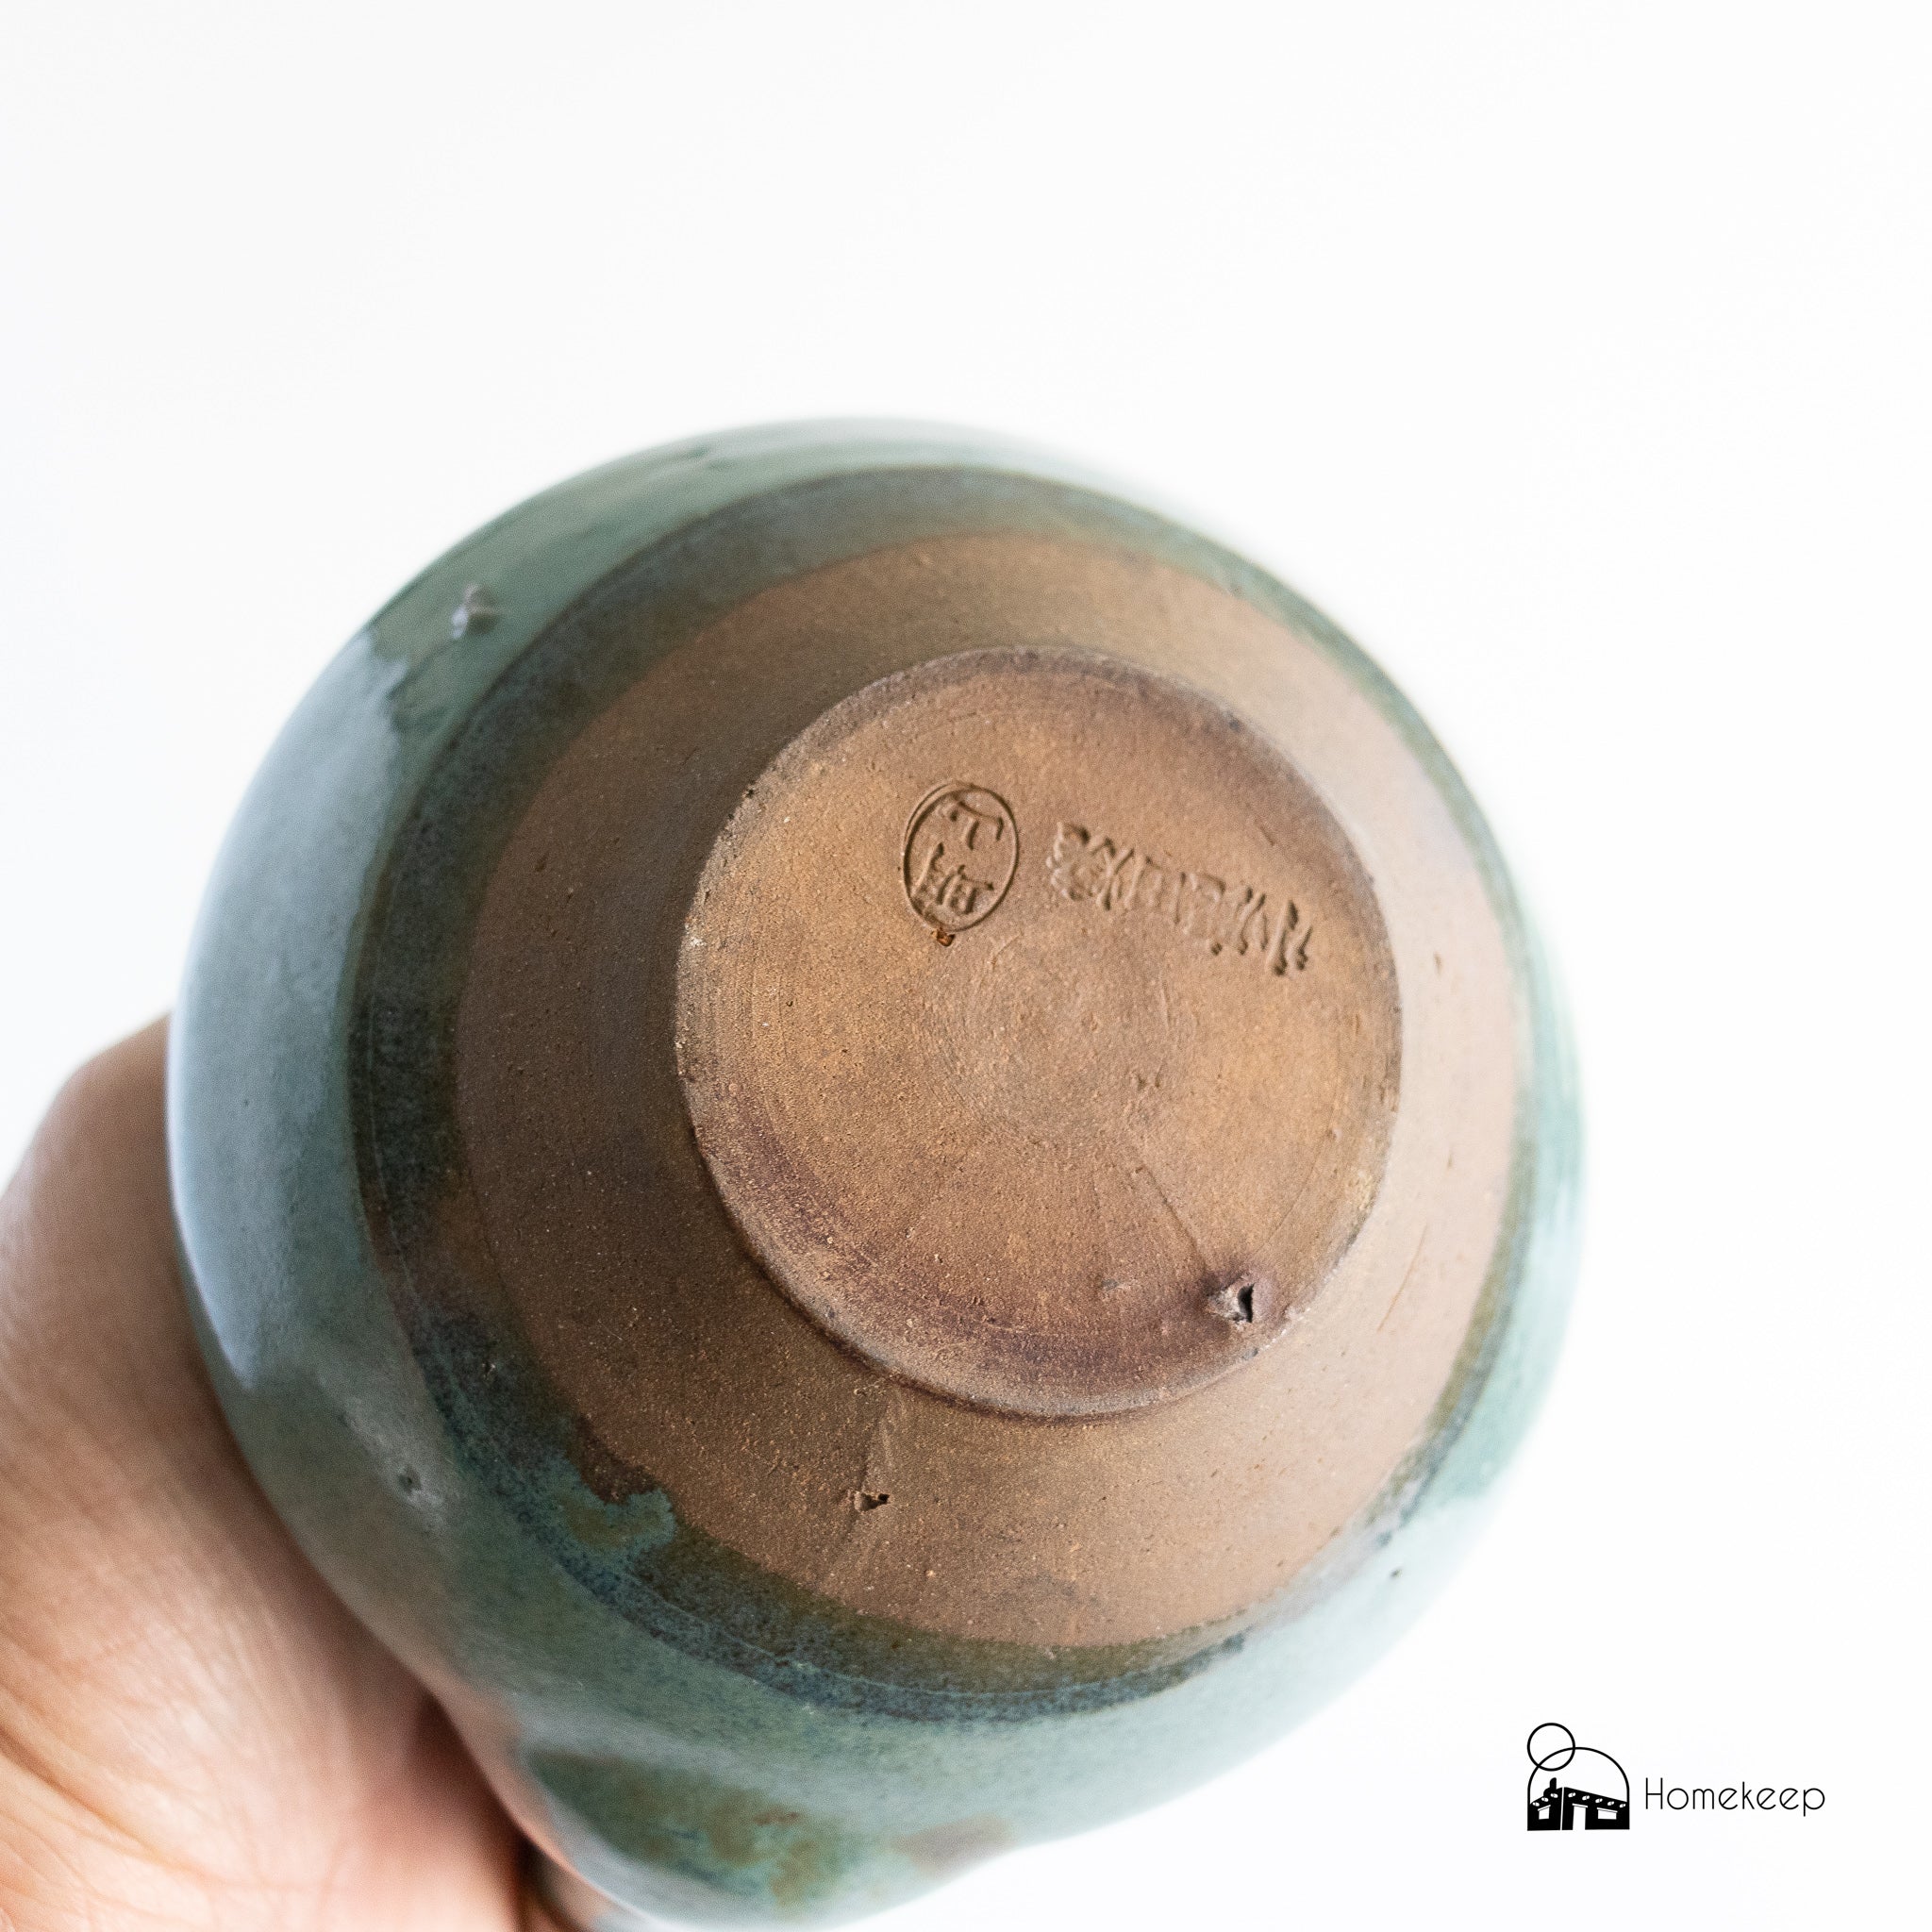 Ceramic Teapot with Wicker Handle - Homekeep Market